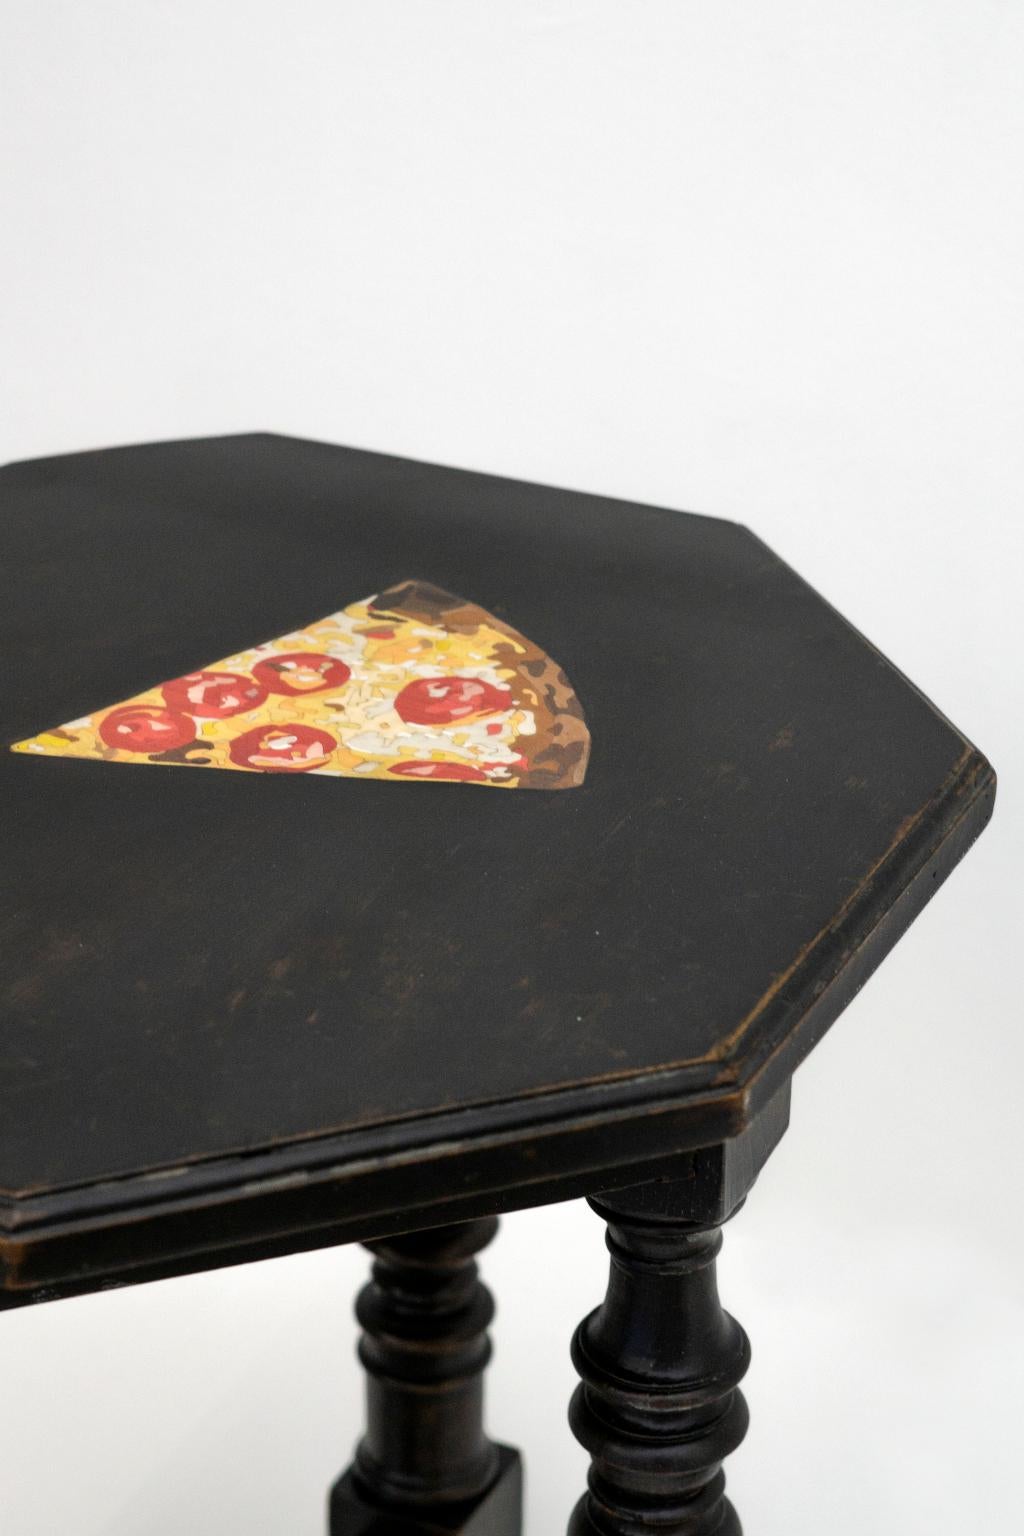 Pizza
nasce dall'idea dell'artista Marcantonio Malerba di rivisitare dei pezzi antichi arricchendoli con l'intervento dell'intarsio in legno, in questo caso la pizza è realizzata dai nostri artigiani con svariati pezzettini di legno colorato con la